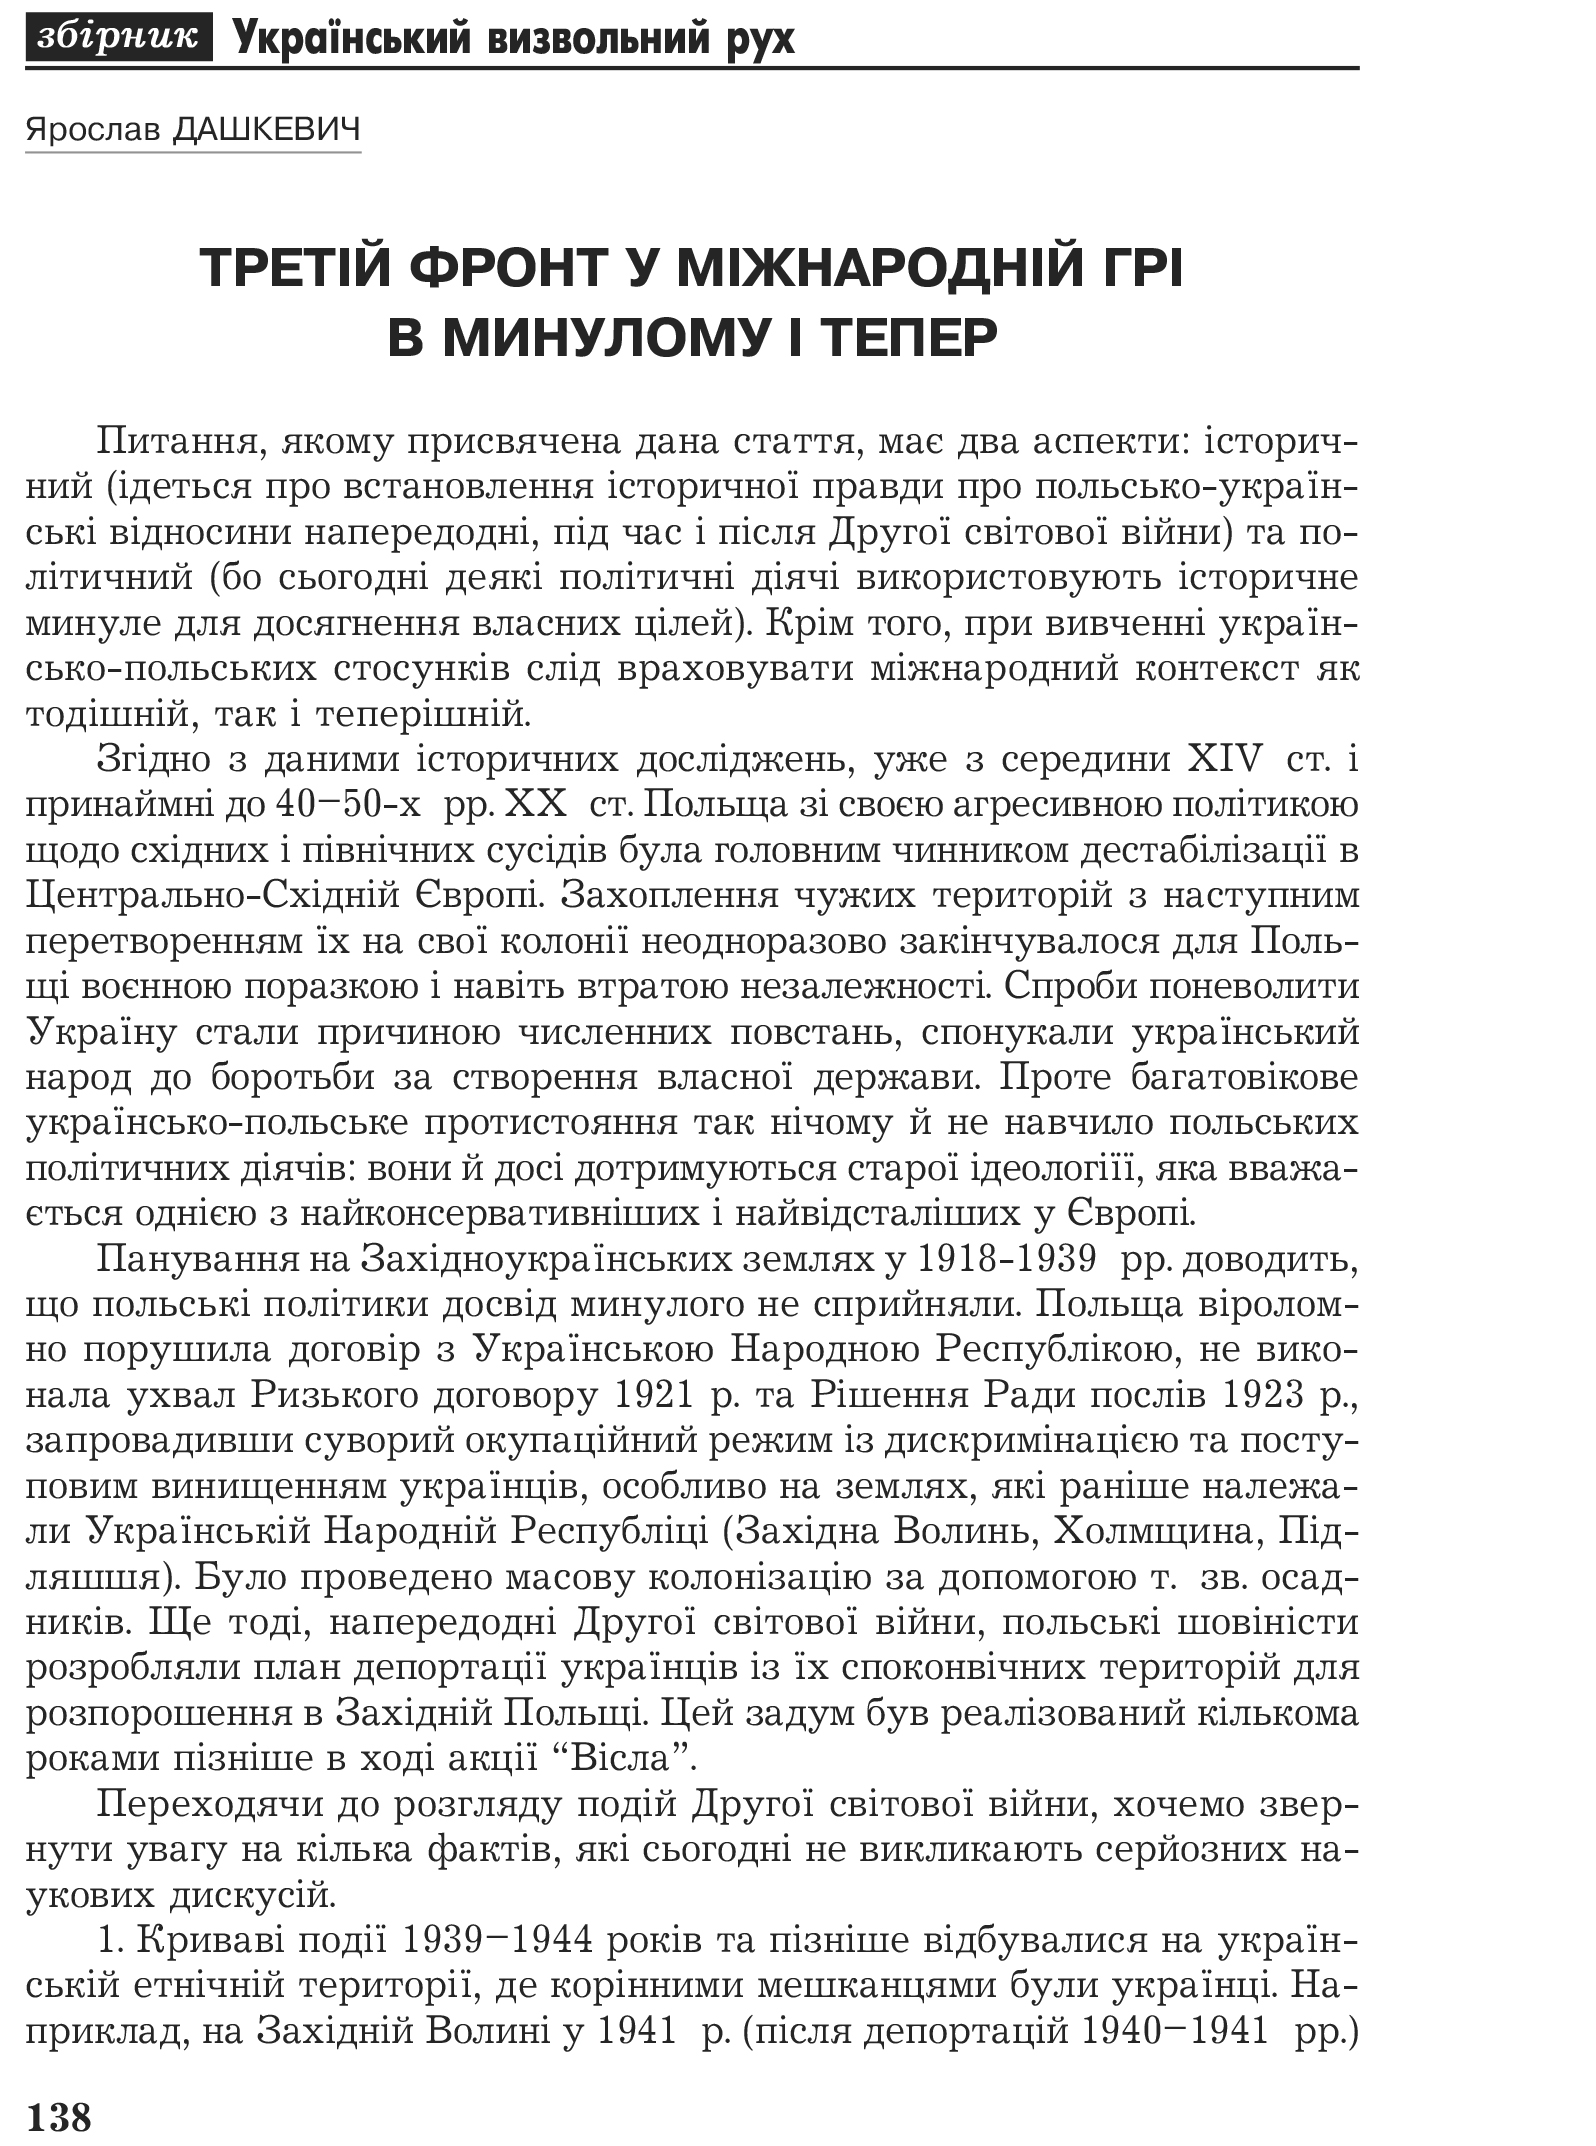 Український визвольний рух №2, ст. 138 - 147